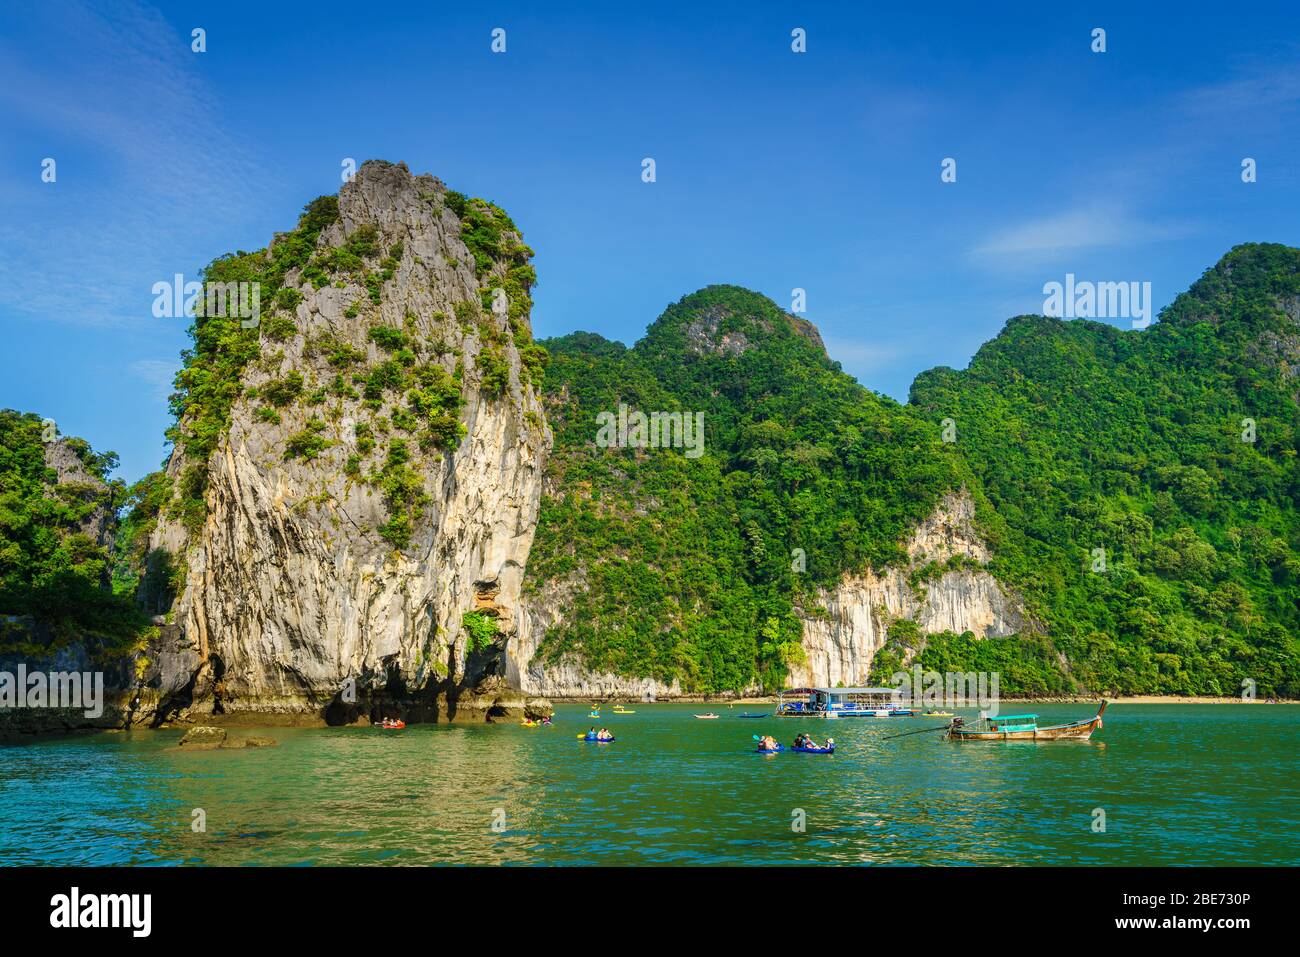 Koh Hong Island, Thaïlande, 5 novembre 2017 : tours de bateaux et kayaks par l'île de Koh Hong - une destination touristique populaire à Krabi, Thaïlande Banque D'Images